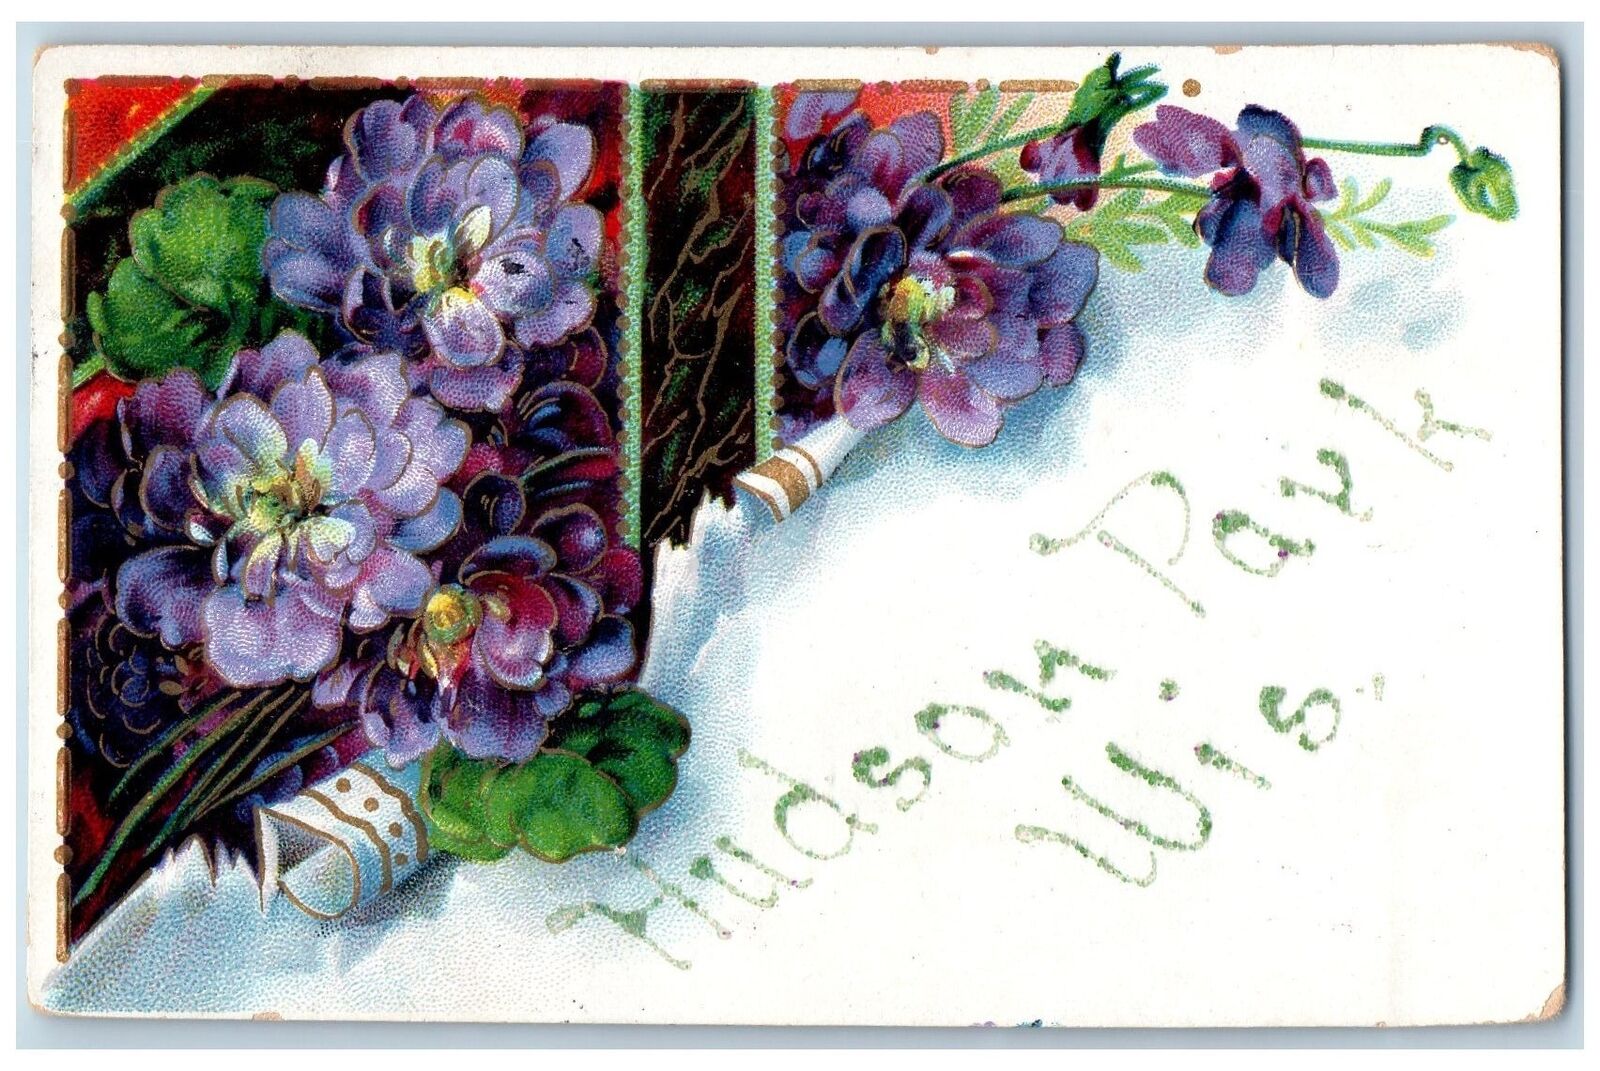 Hudson Park Wisconsin WI Postcard Greetings Embossed Flowers Leaves 1911 Antique